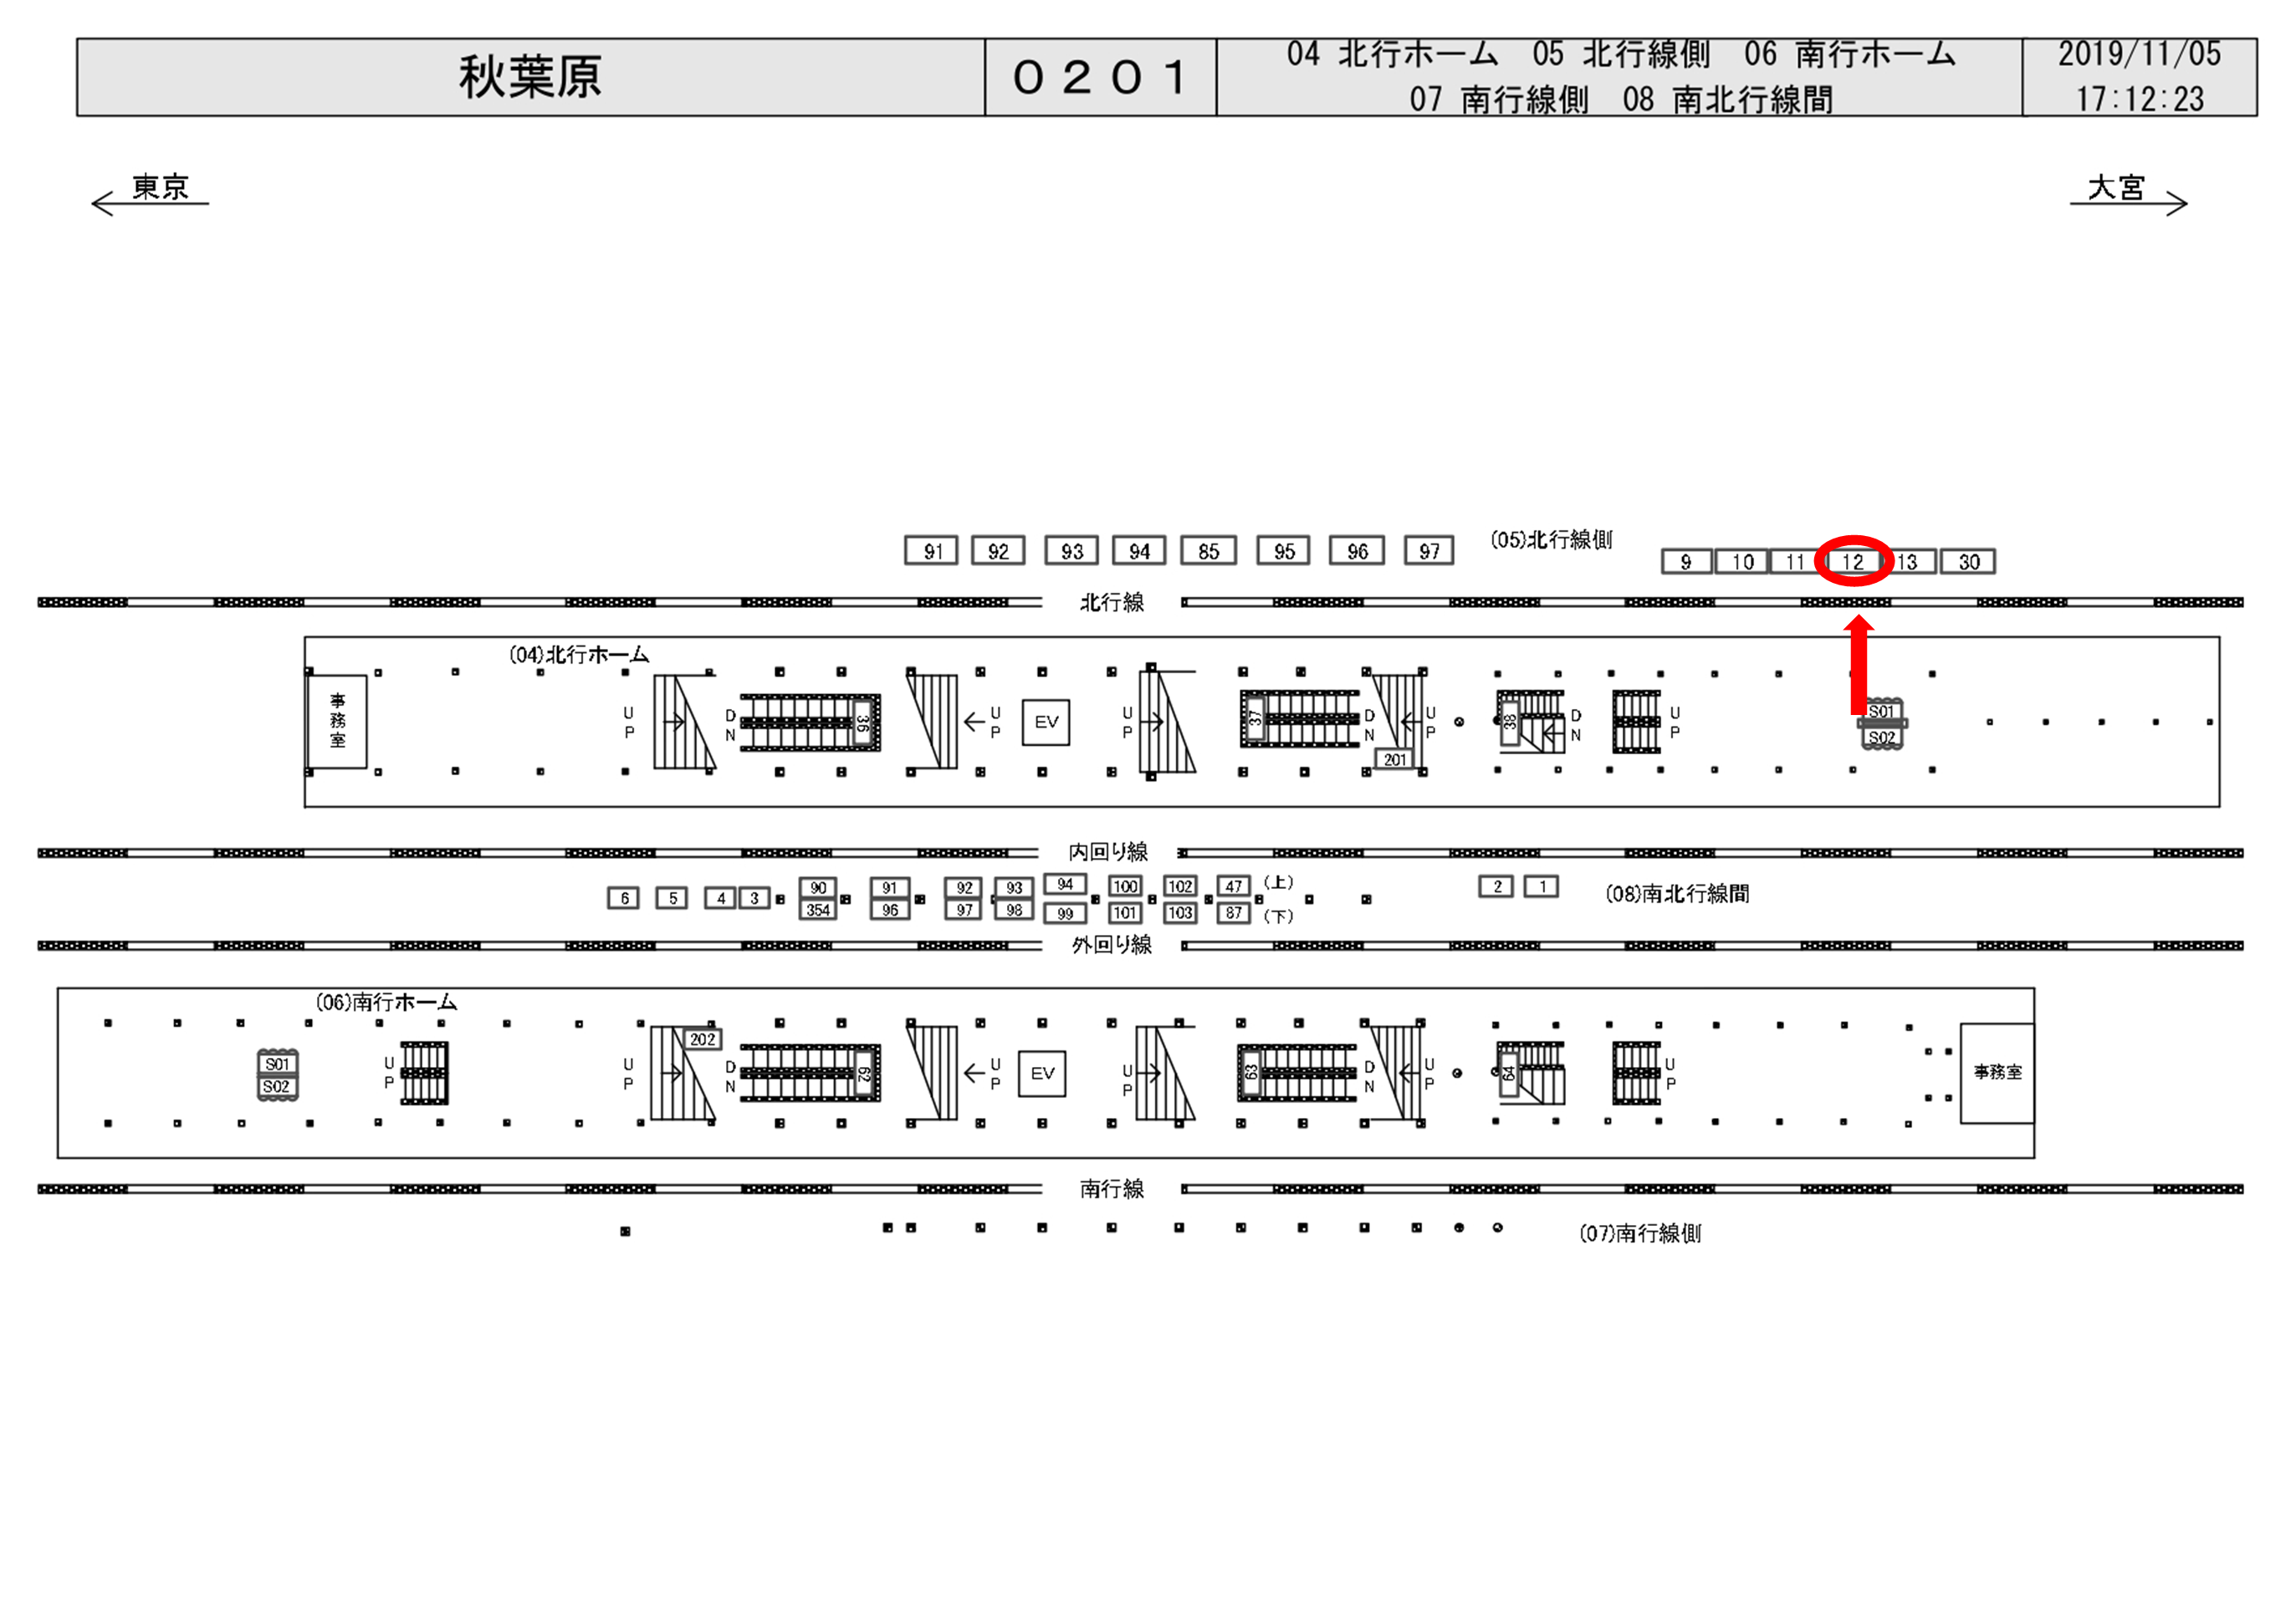 JR東日本 秋葉原駅 20114-0201-05-012 駅看板・駅広告媒体一覧 | 駅 